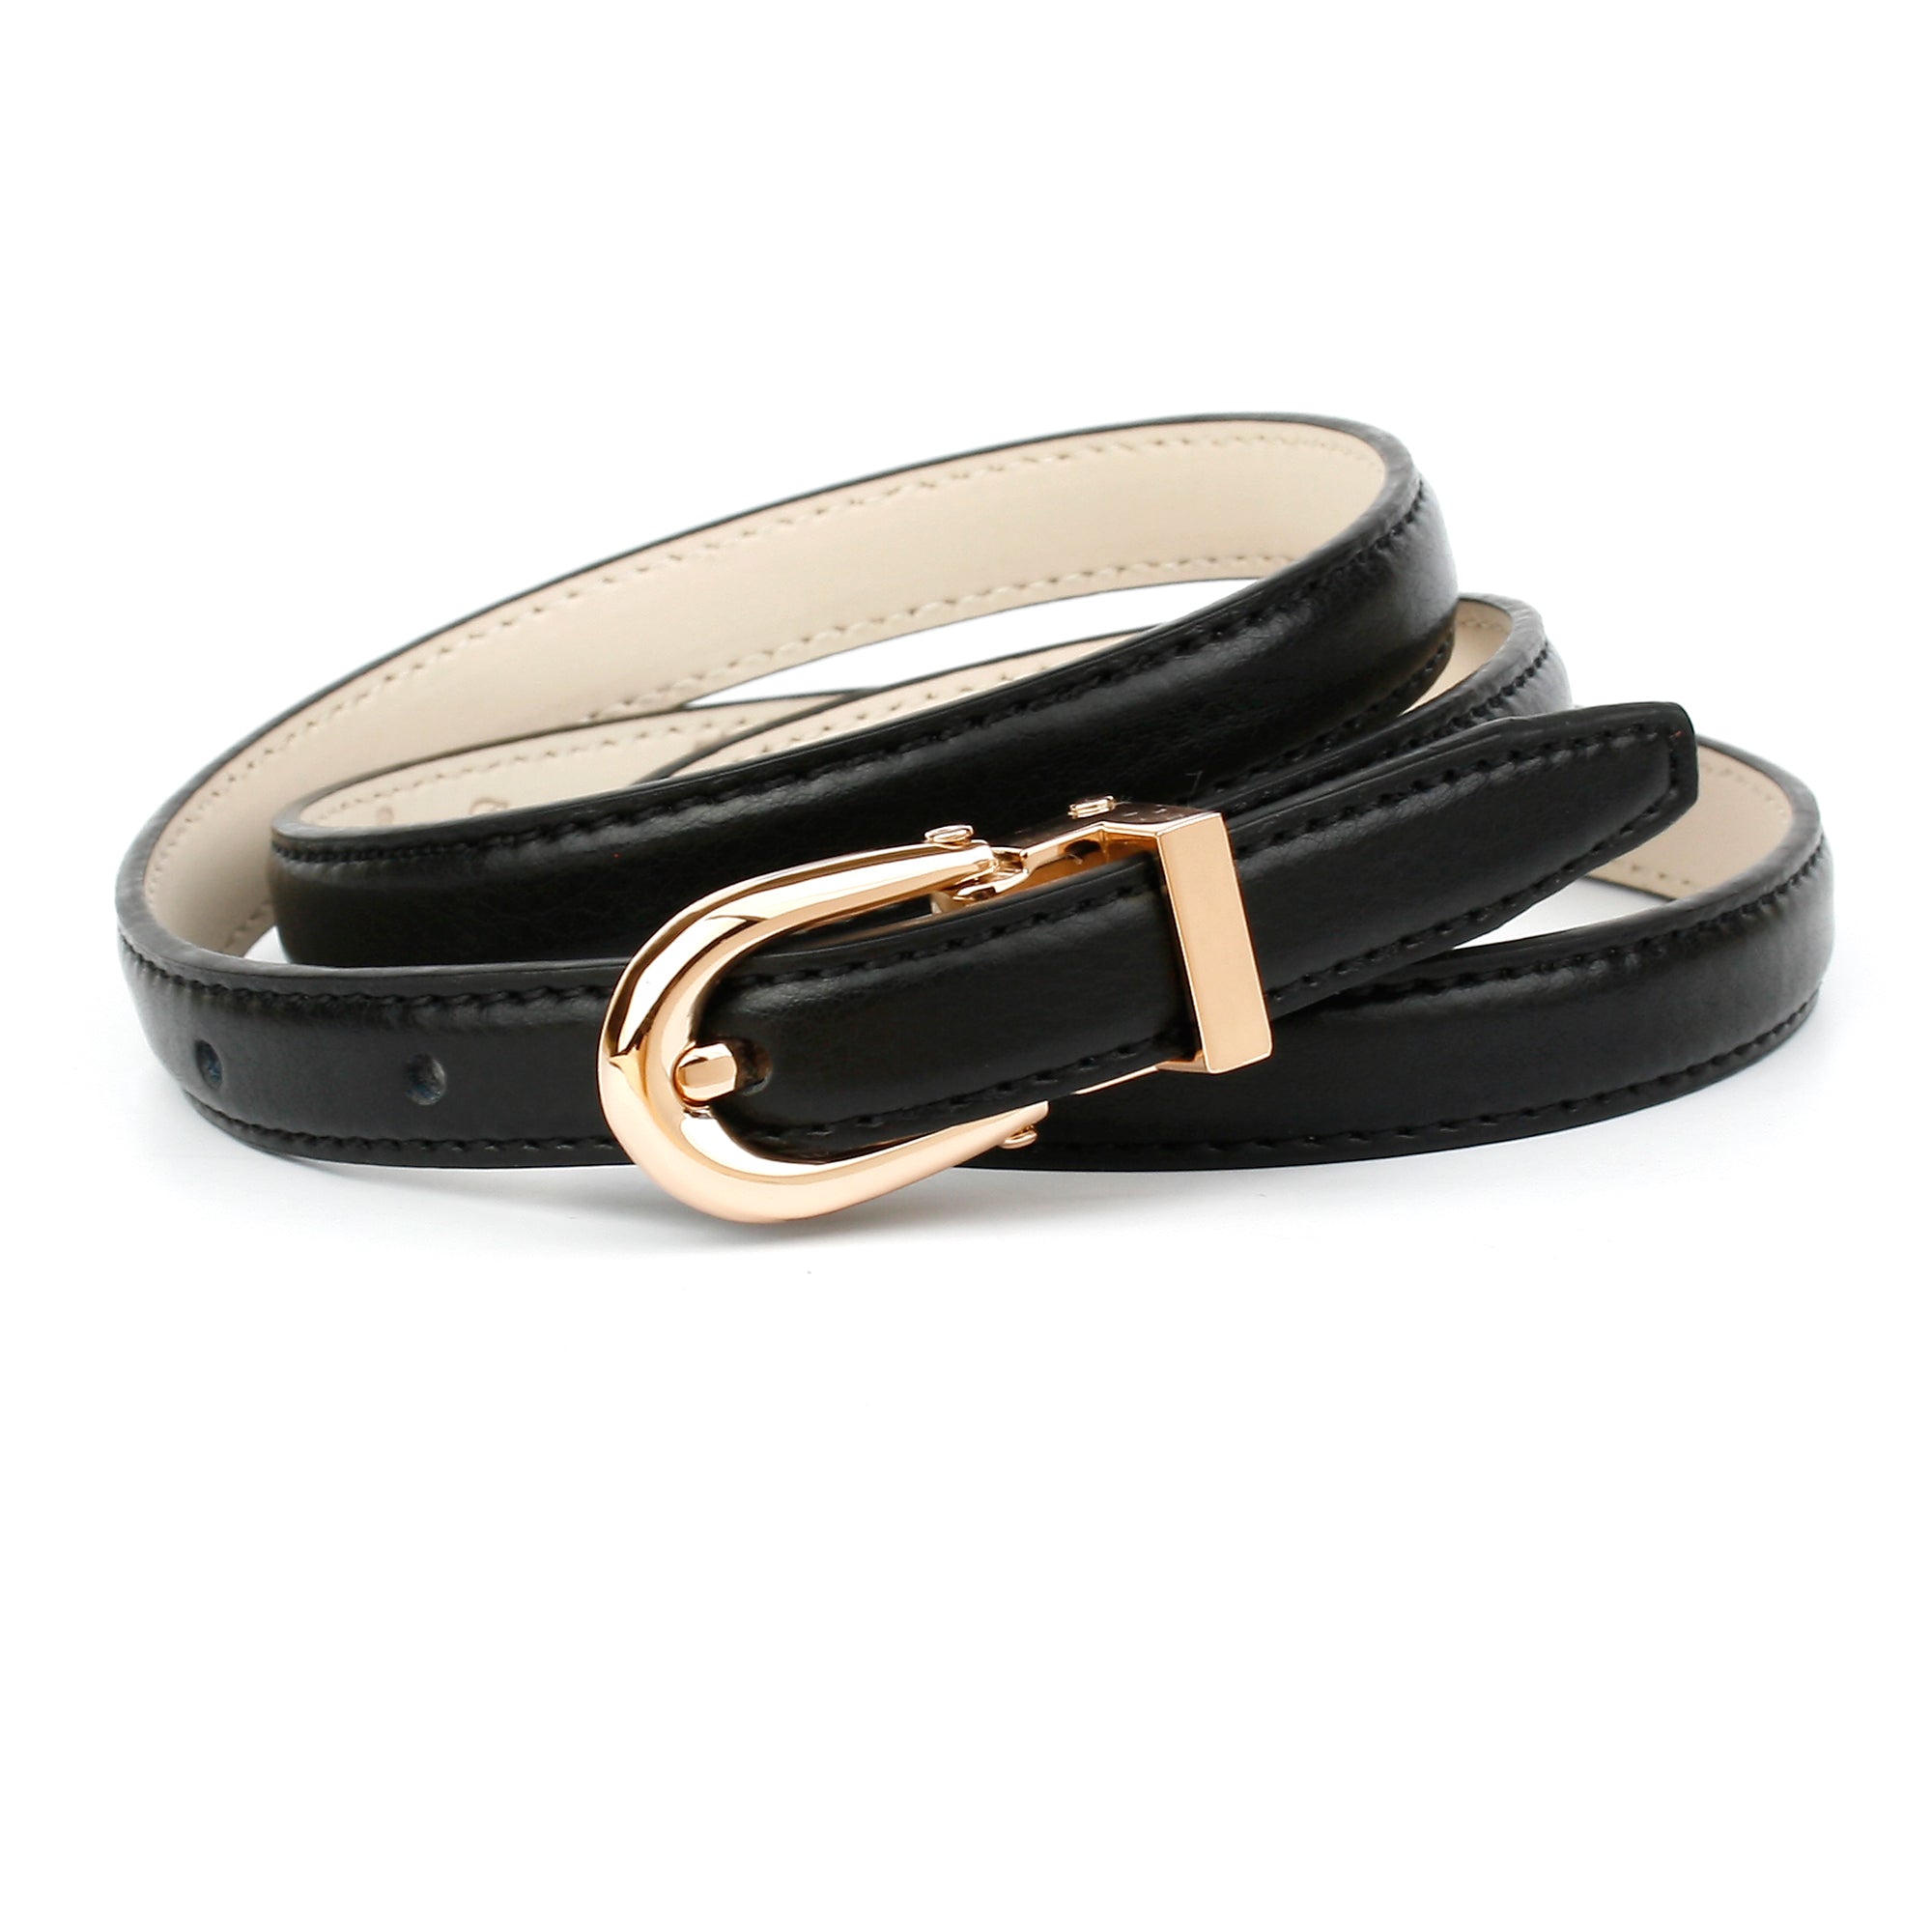 1,4 cm schmaler Ledergürtel in Schwarz mit goldfarbener Schließe –  anthonicrown